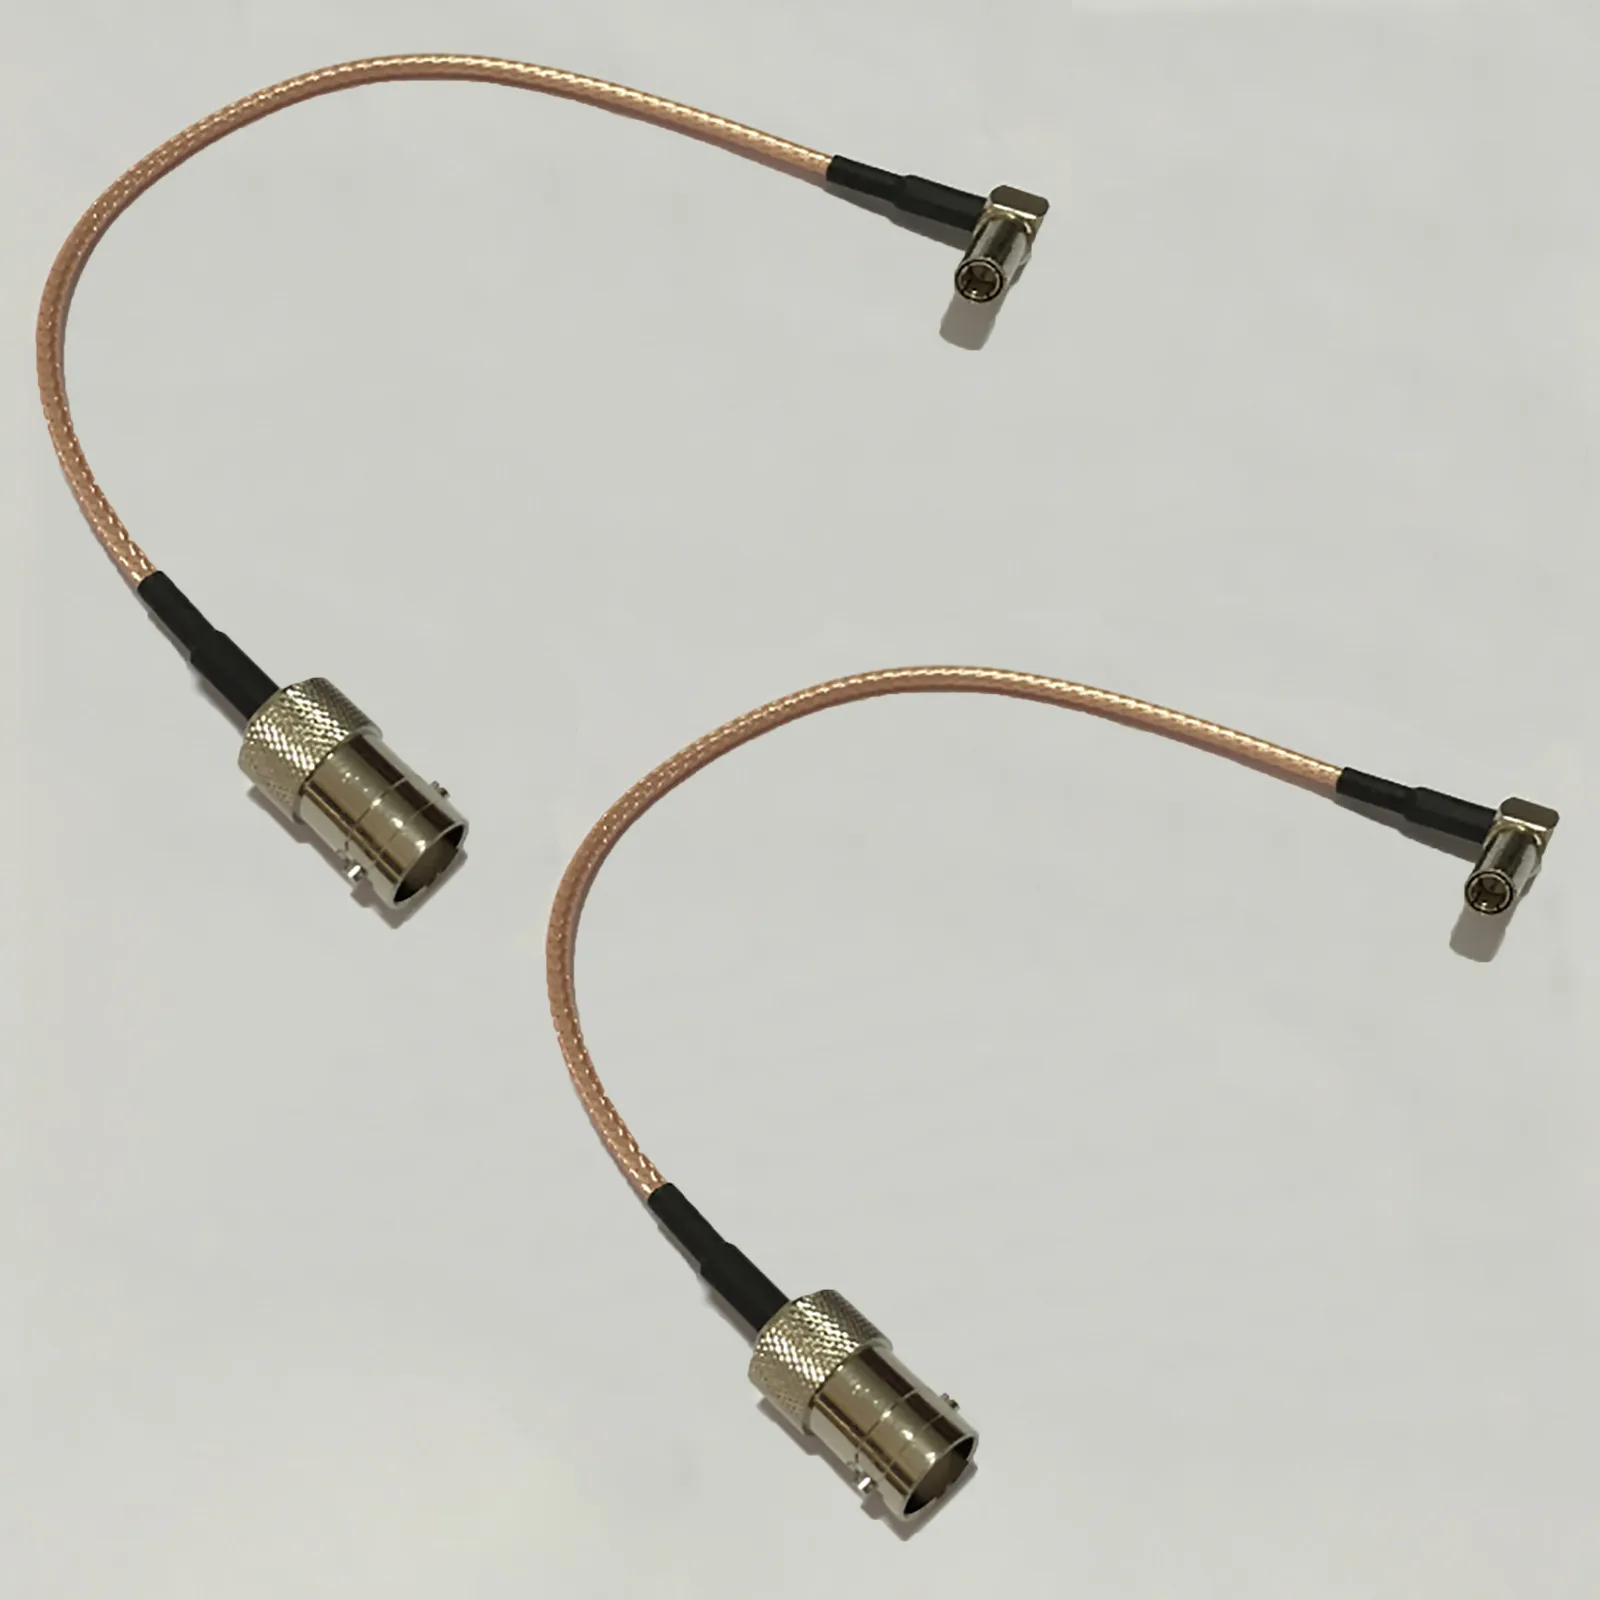 Walkie-talkie Test Cable Test Connect Cable for M XiR P8668 P6600 GP328D GP338D DP4800 Walkie-talkie Parts Repair Accessories